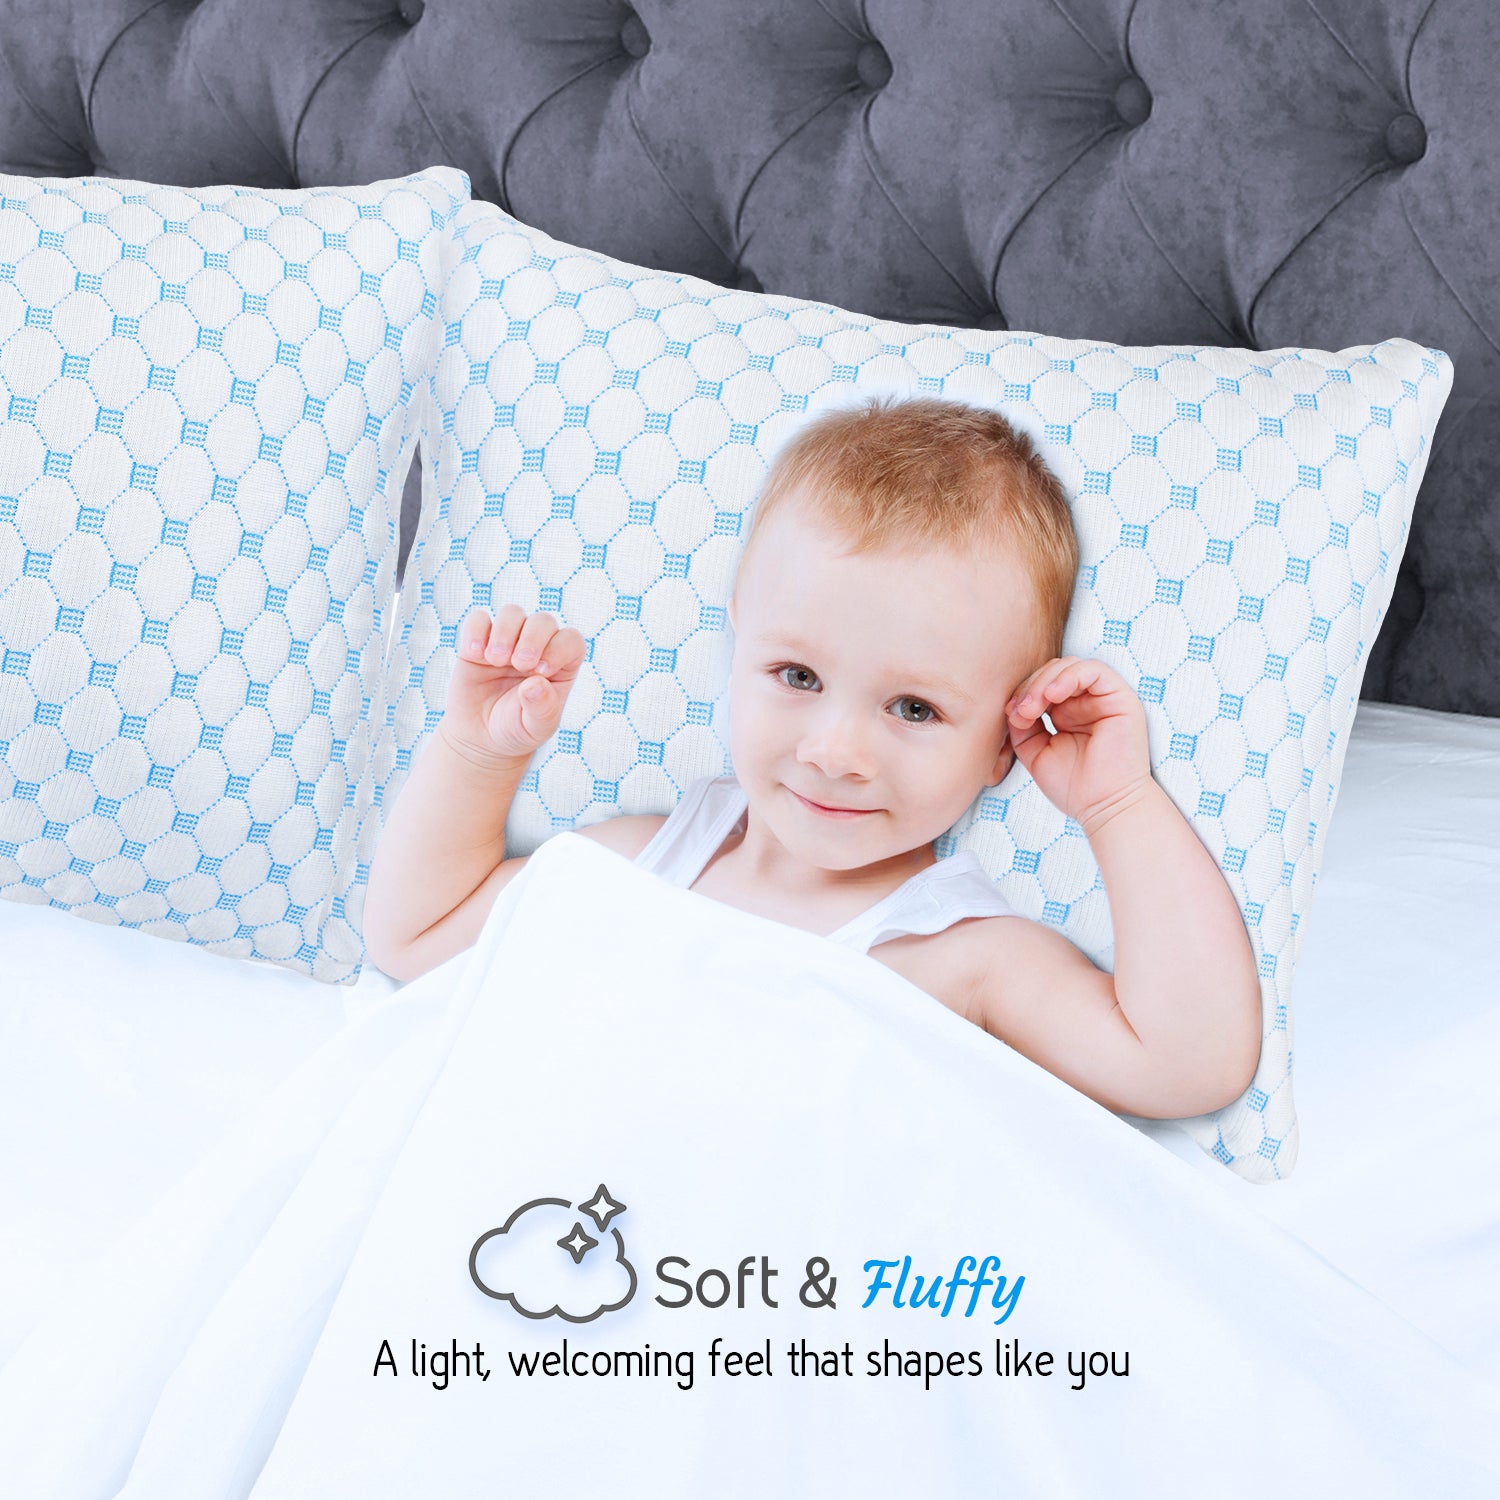 Nestl Bedding Couch Throw Pillow Inserts - Premium Hypoallergennic